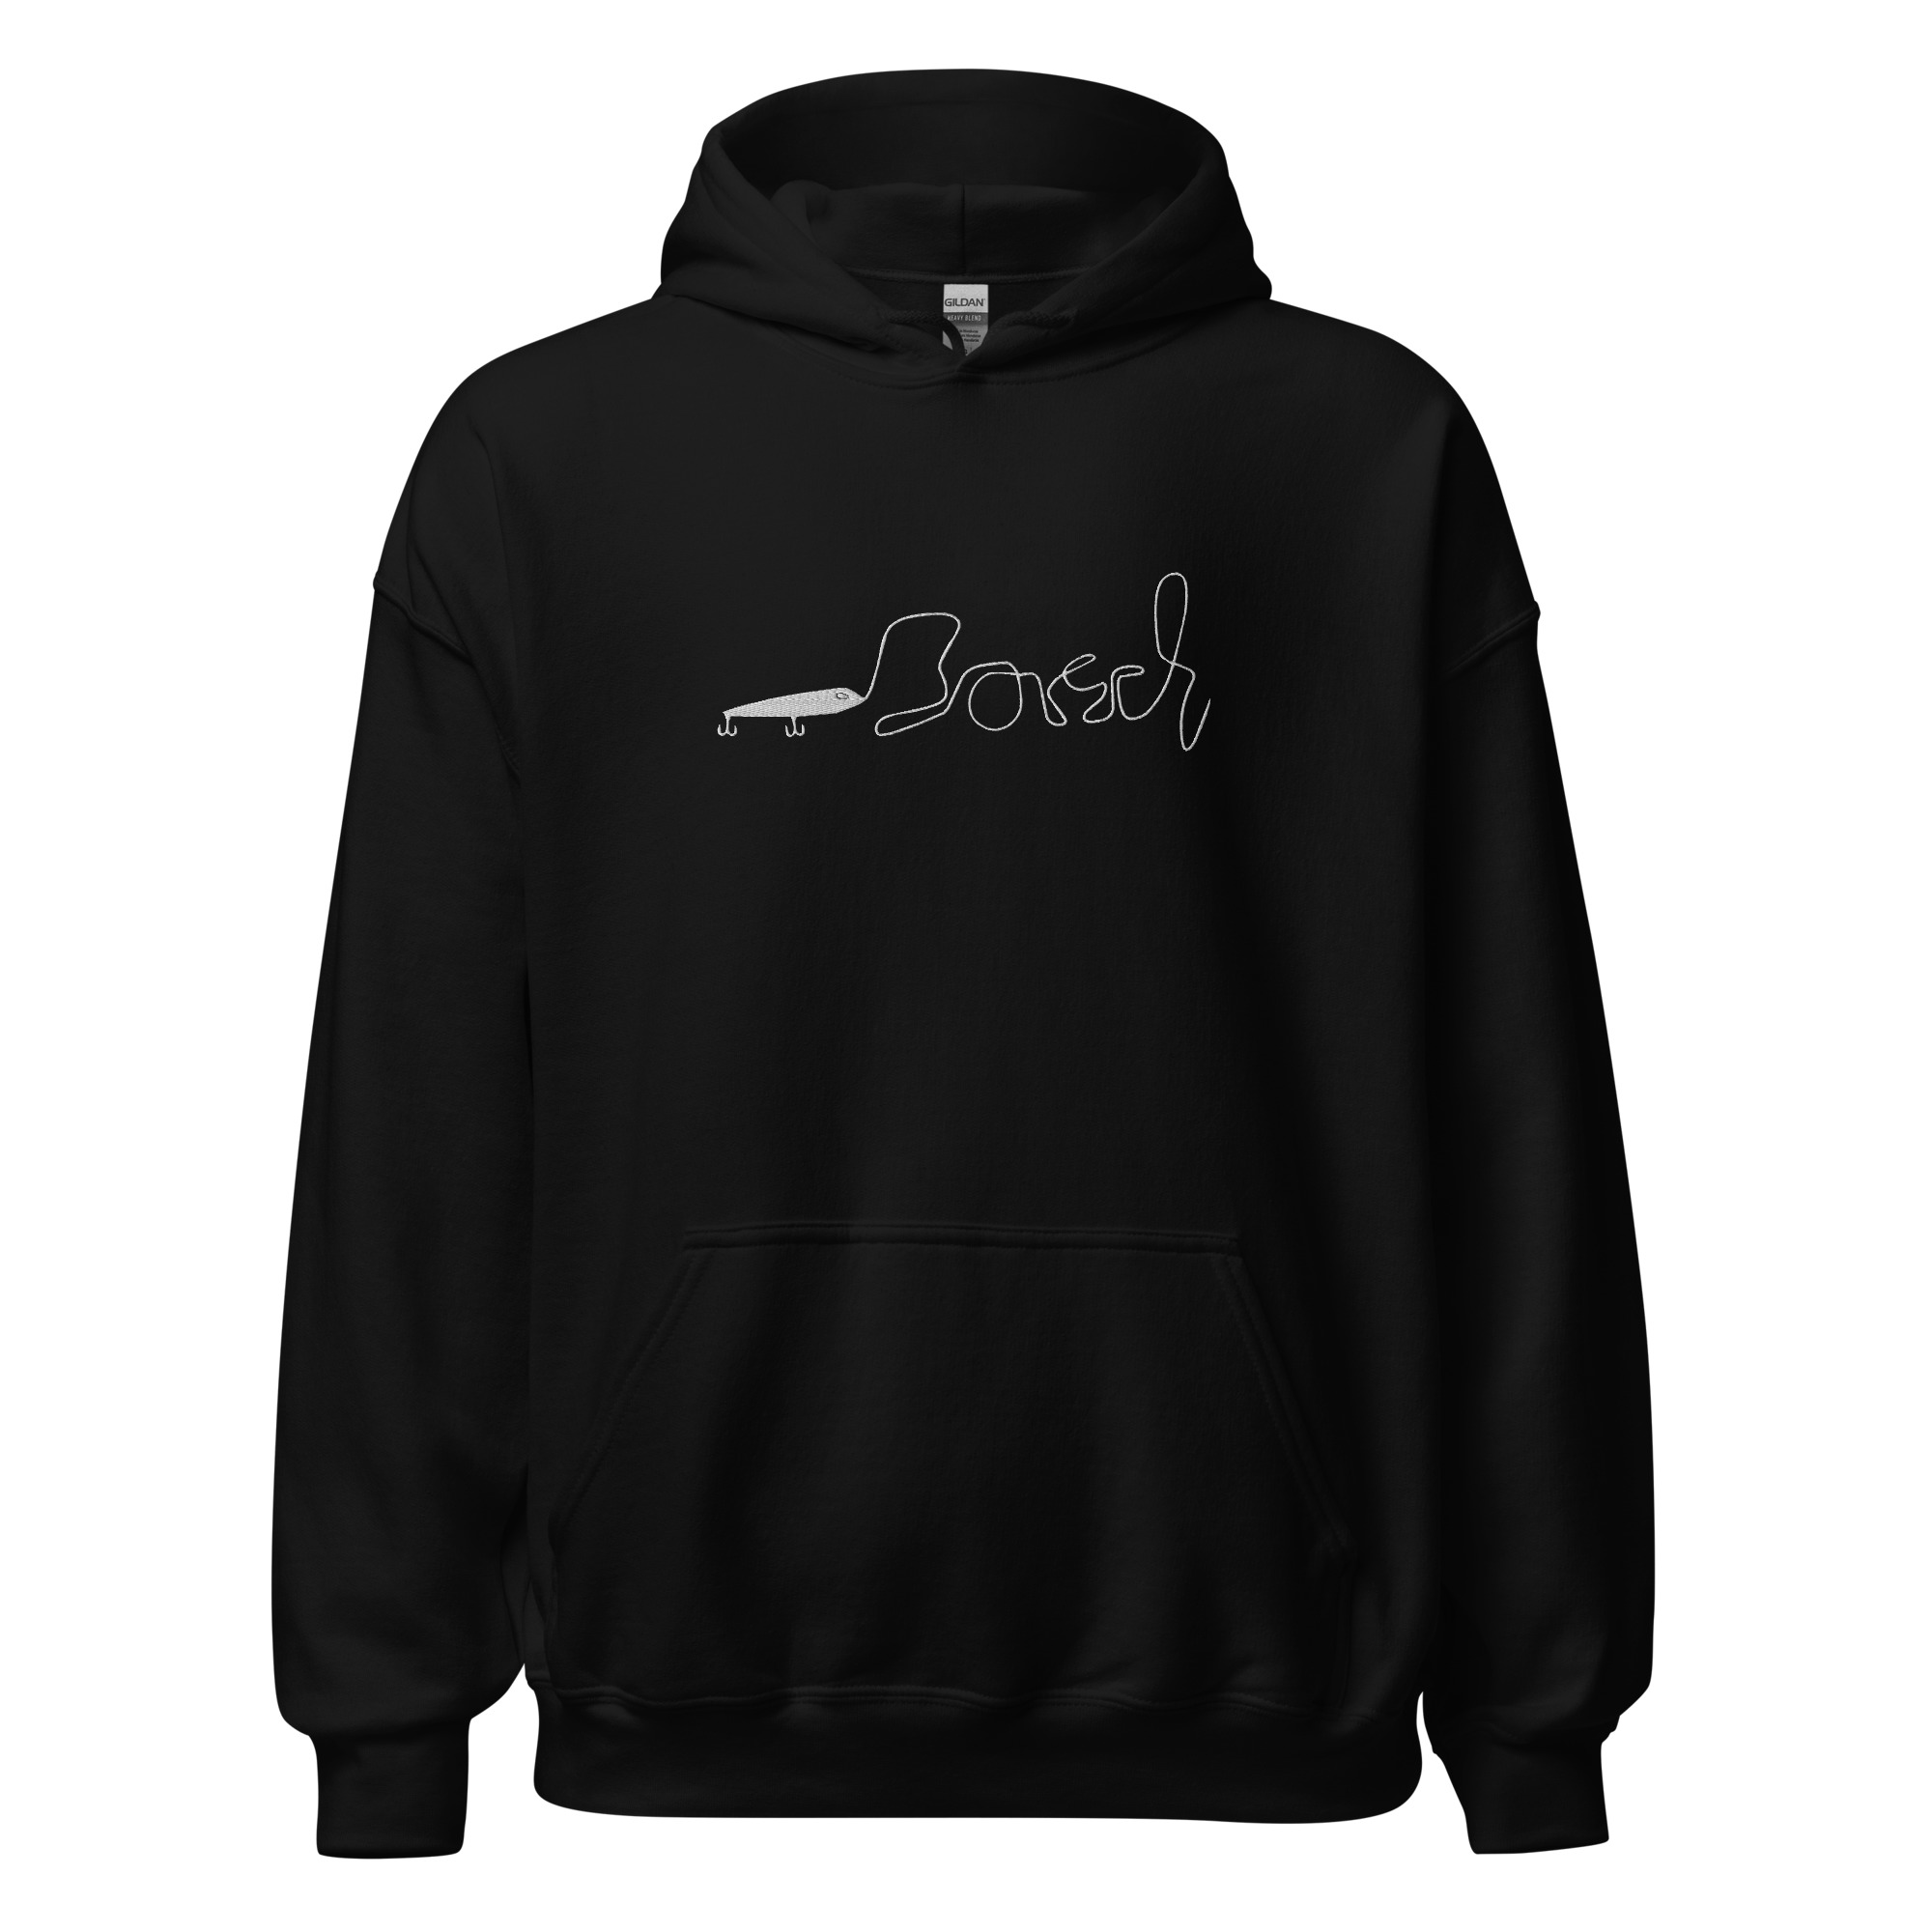 unisex-heavy-blend-hoodie-black-front-63e24e5b71cbf.jpg